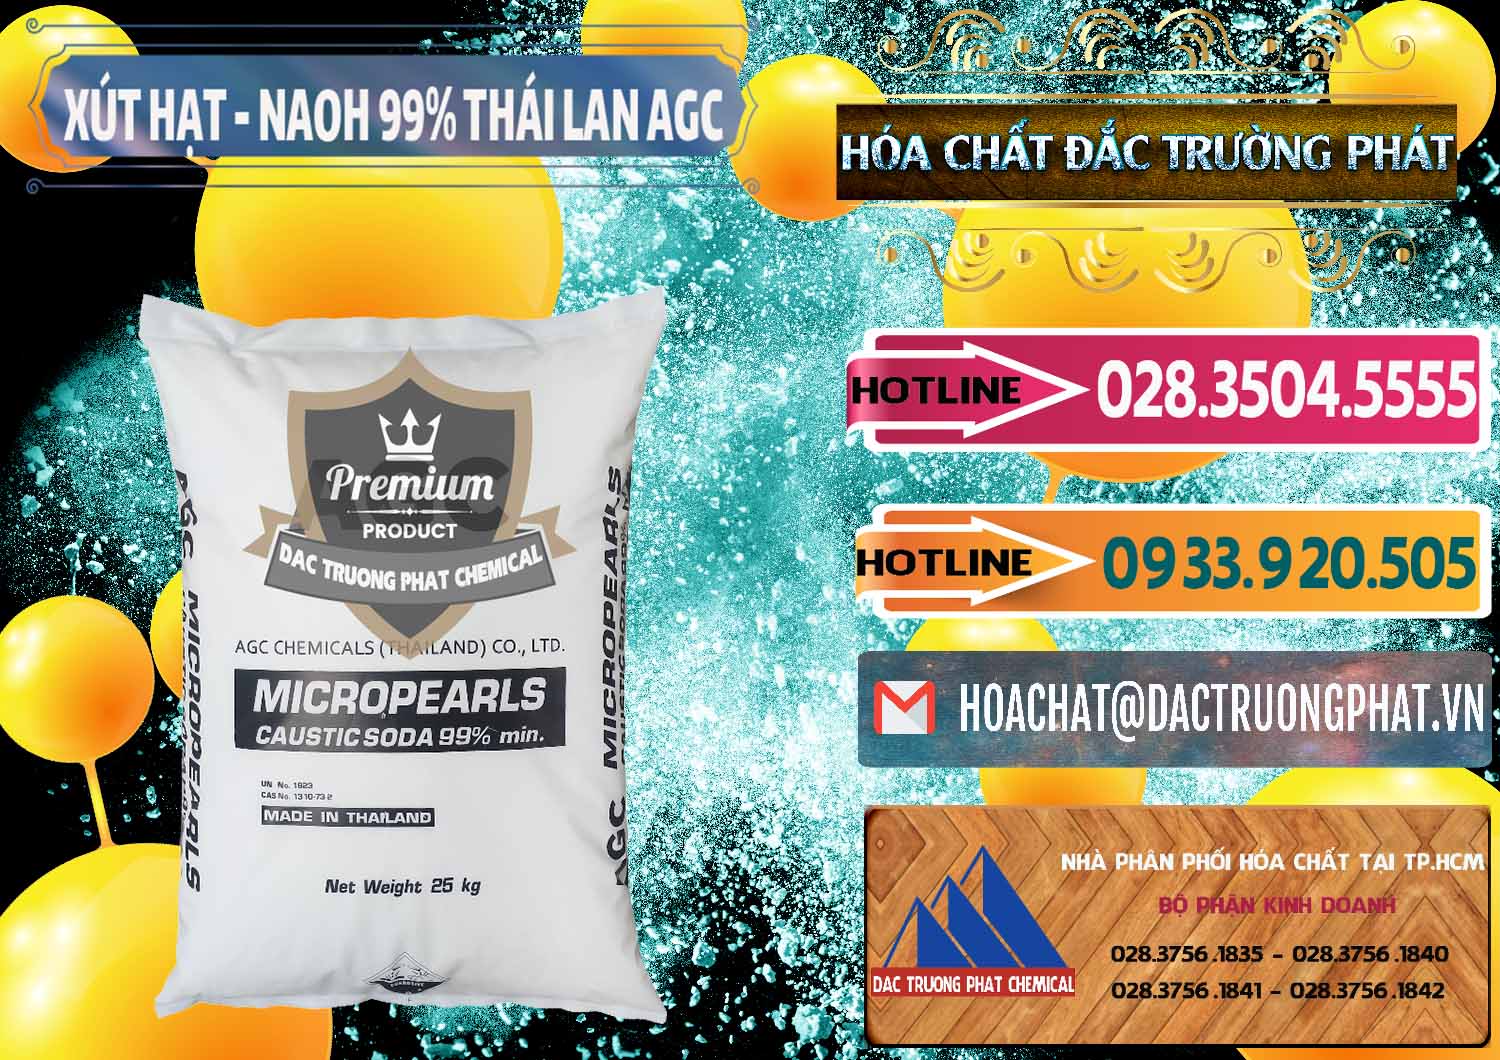 Công ty bán & phân phối Xút Hạt - NaOH Bột 99% AGC Thái Lan - 0168 - Cty nhập khẩu & phân phối hóa chất tại TP.HCM - dactruongphat.vn